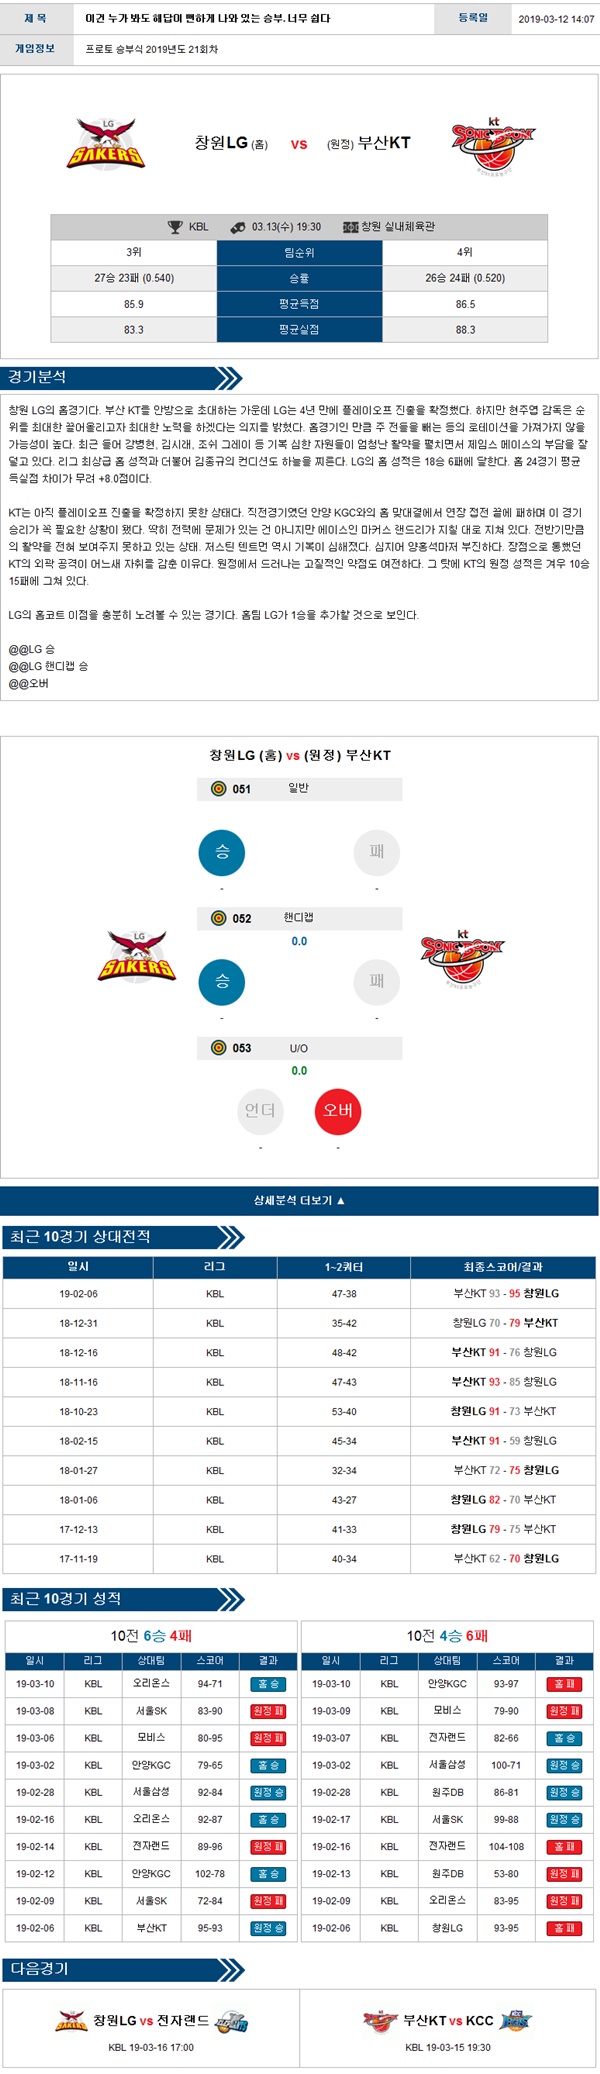 03월13일 KBL 남자프로농구 2경기 버저비터의 분석픽